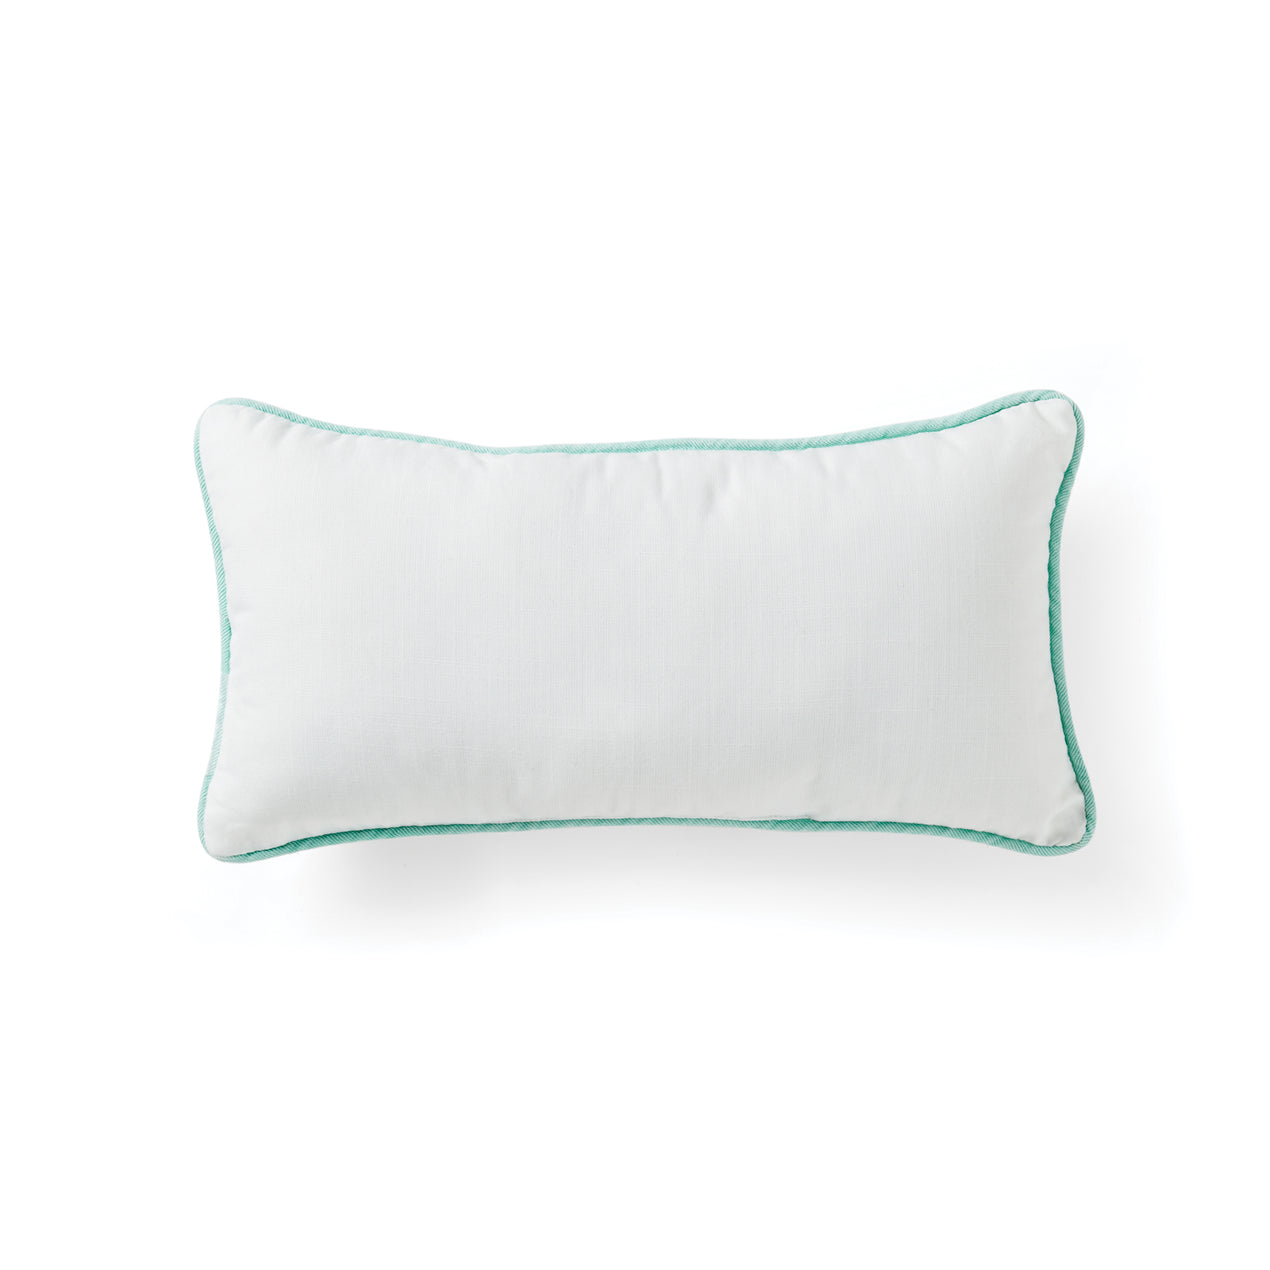 18 x 18 Gray & Green Opal Flower Outdoor Throw Pillow